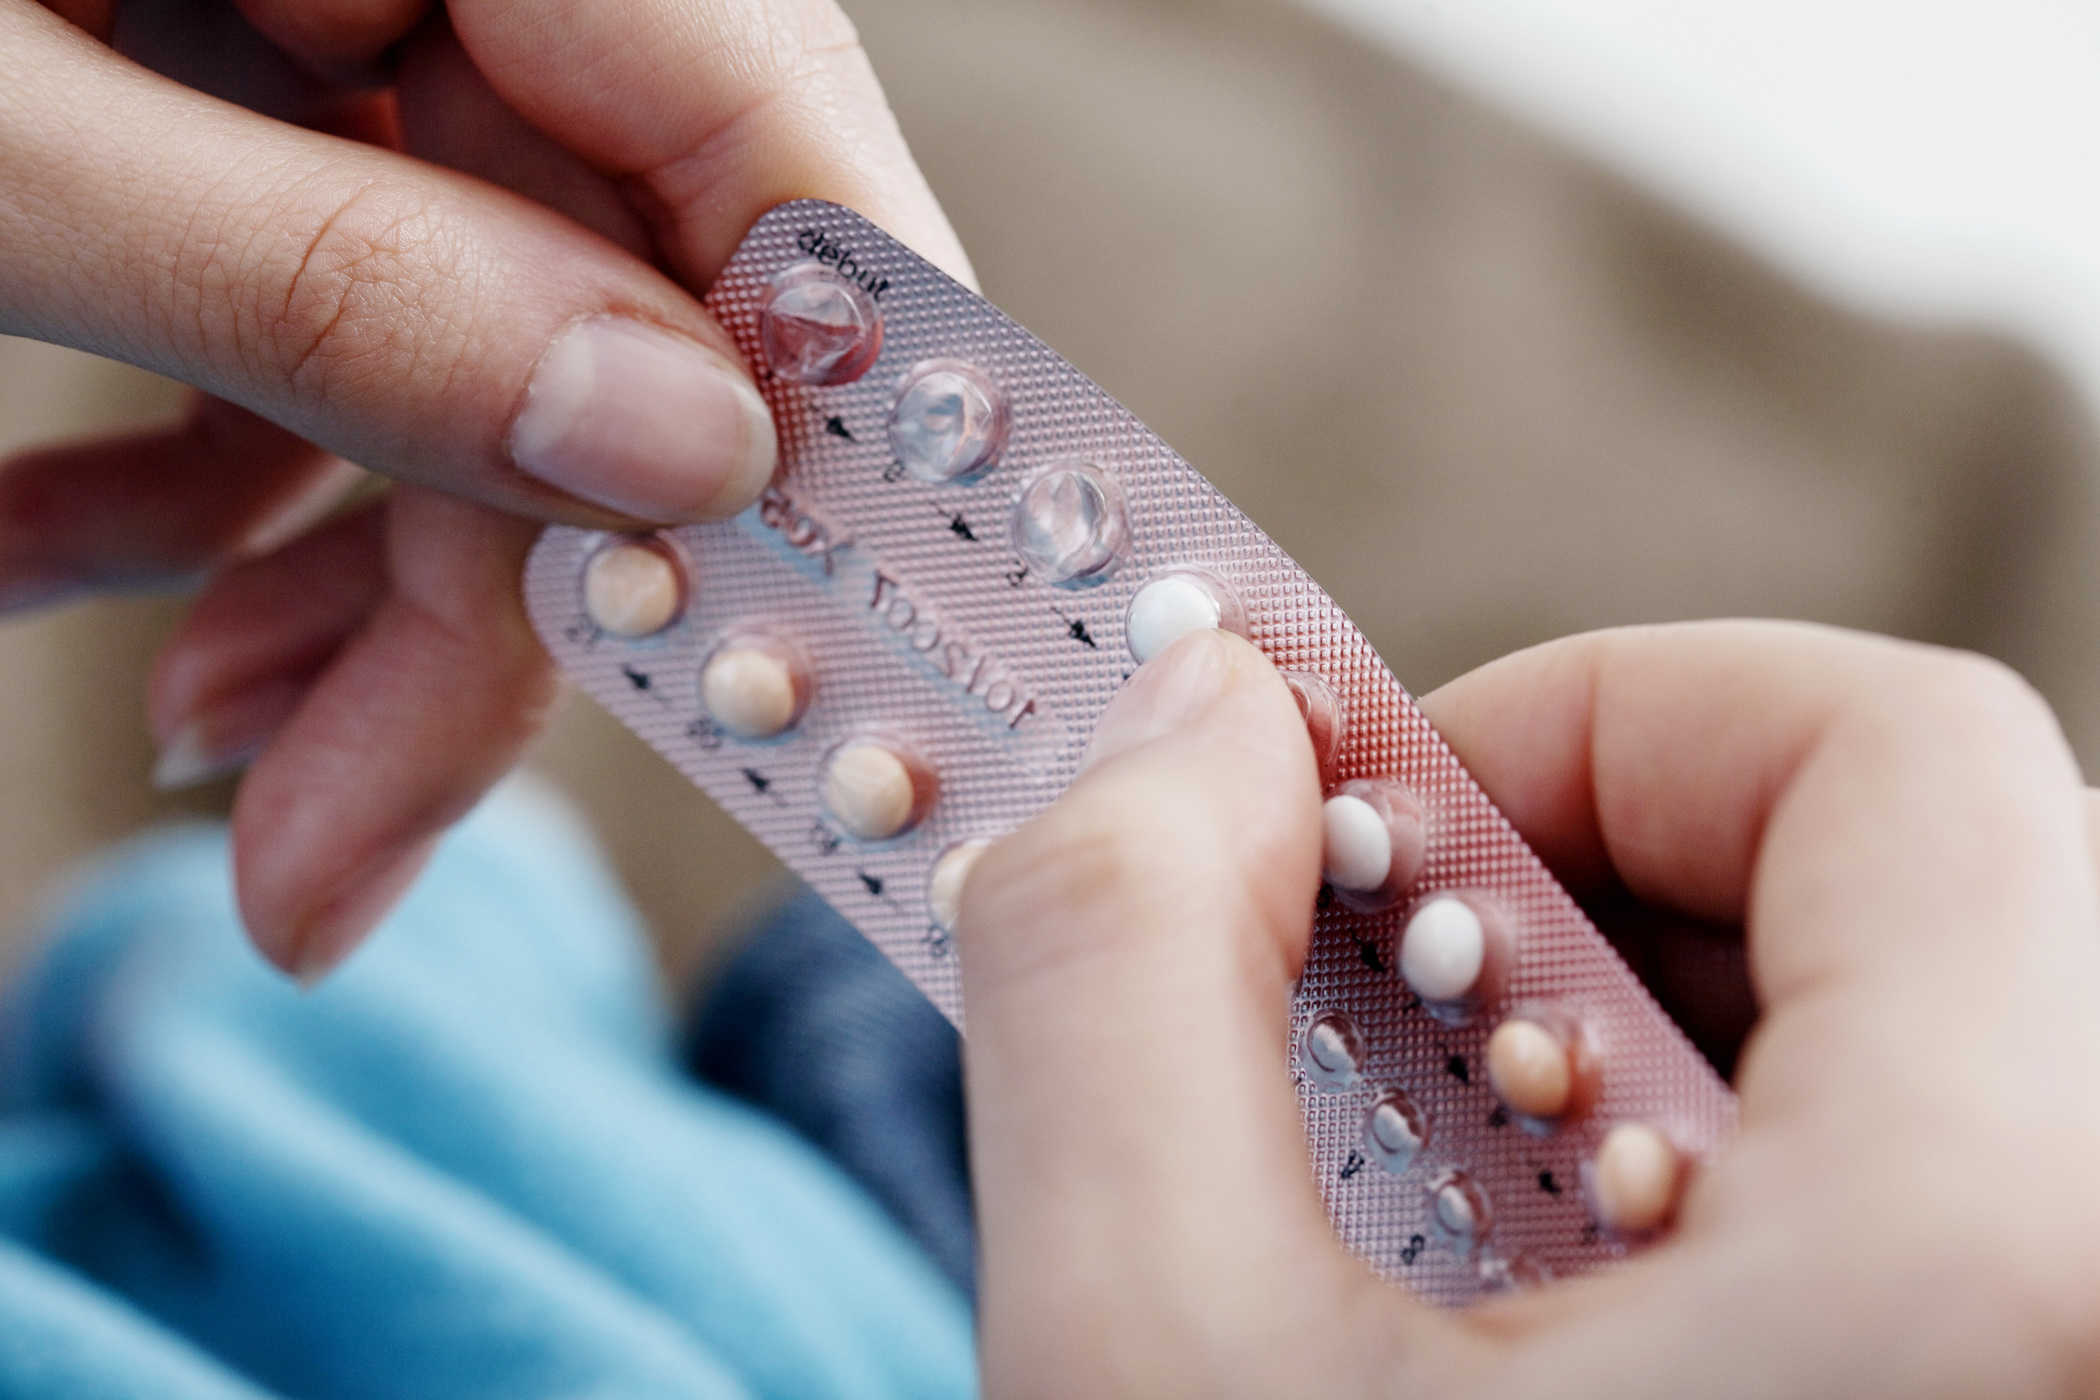 حبوب منع الحمل: الفوائد والمخاطر وكيف تعمل على منع الحمل